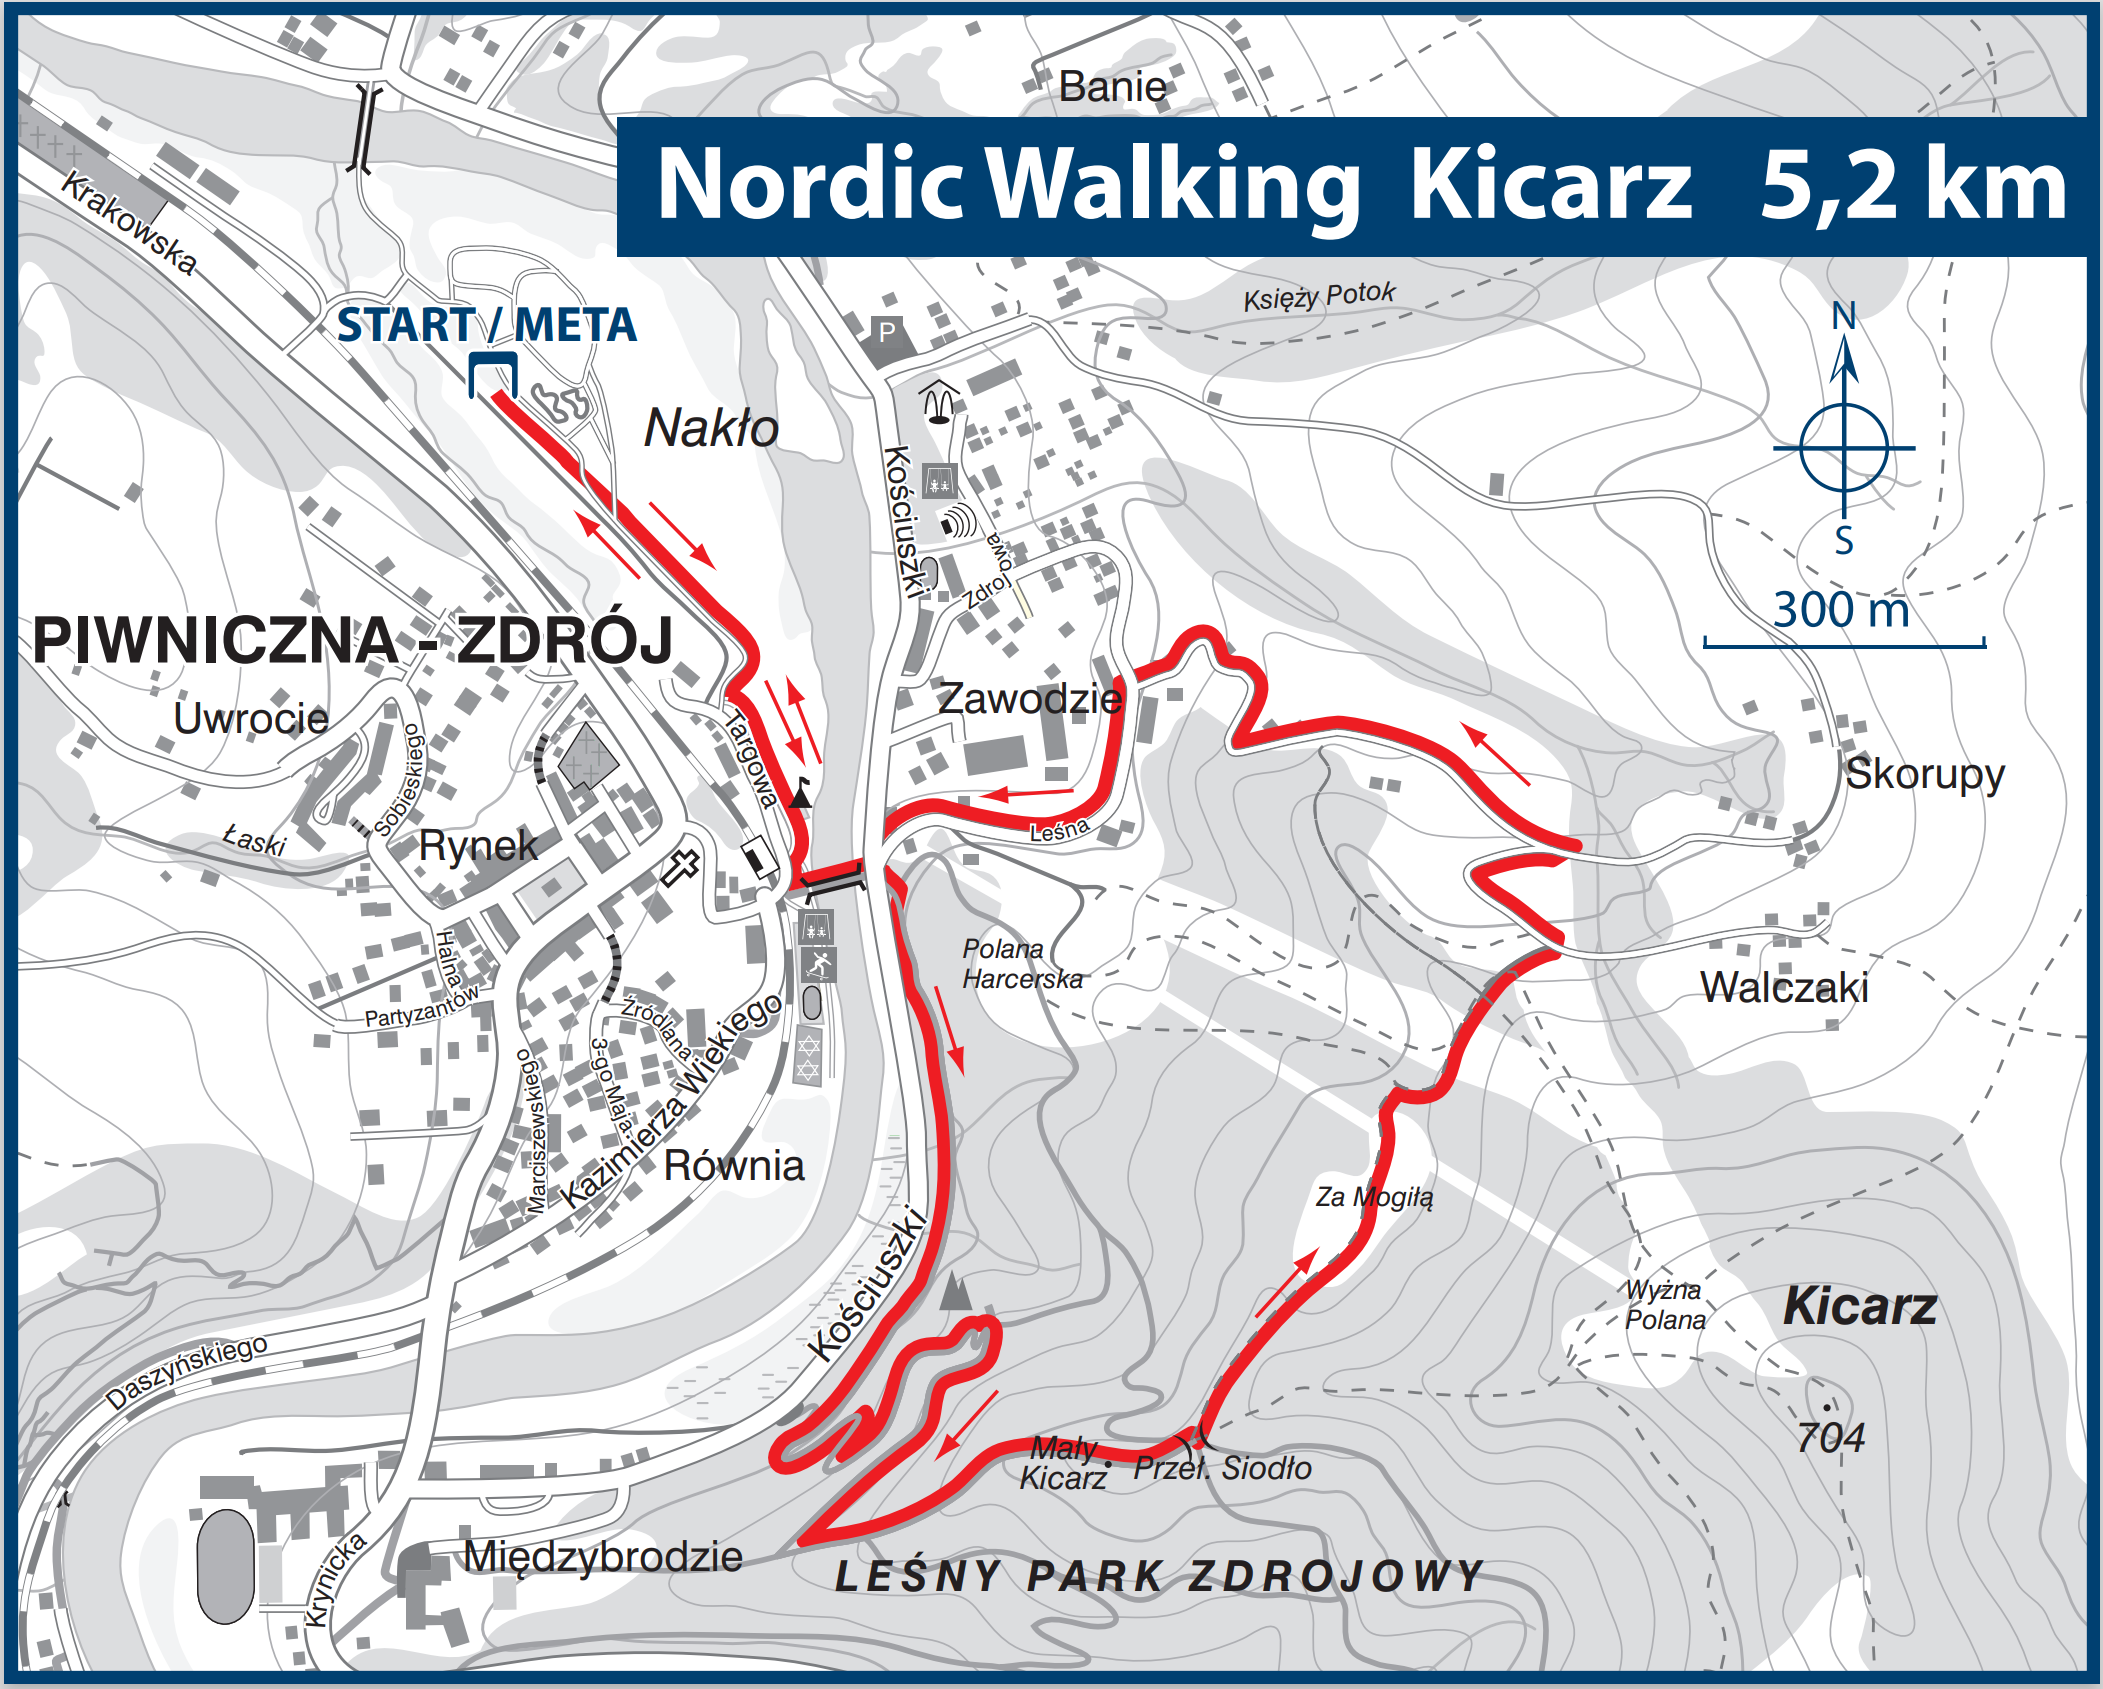 Górskie Mistrzostwa Polski w Nordic Walking odbędą się na Kicarzu